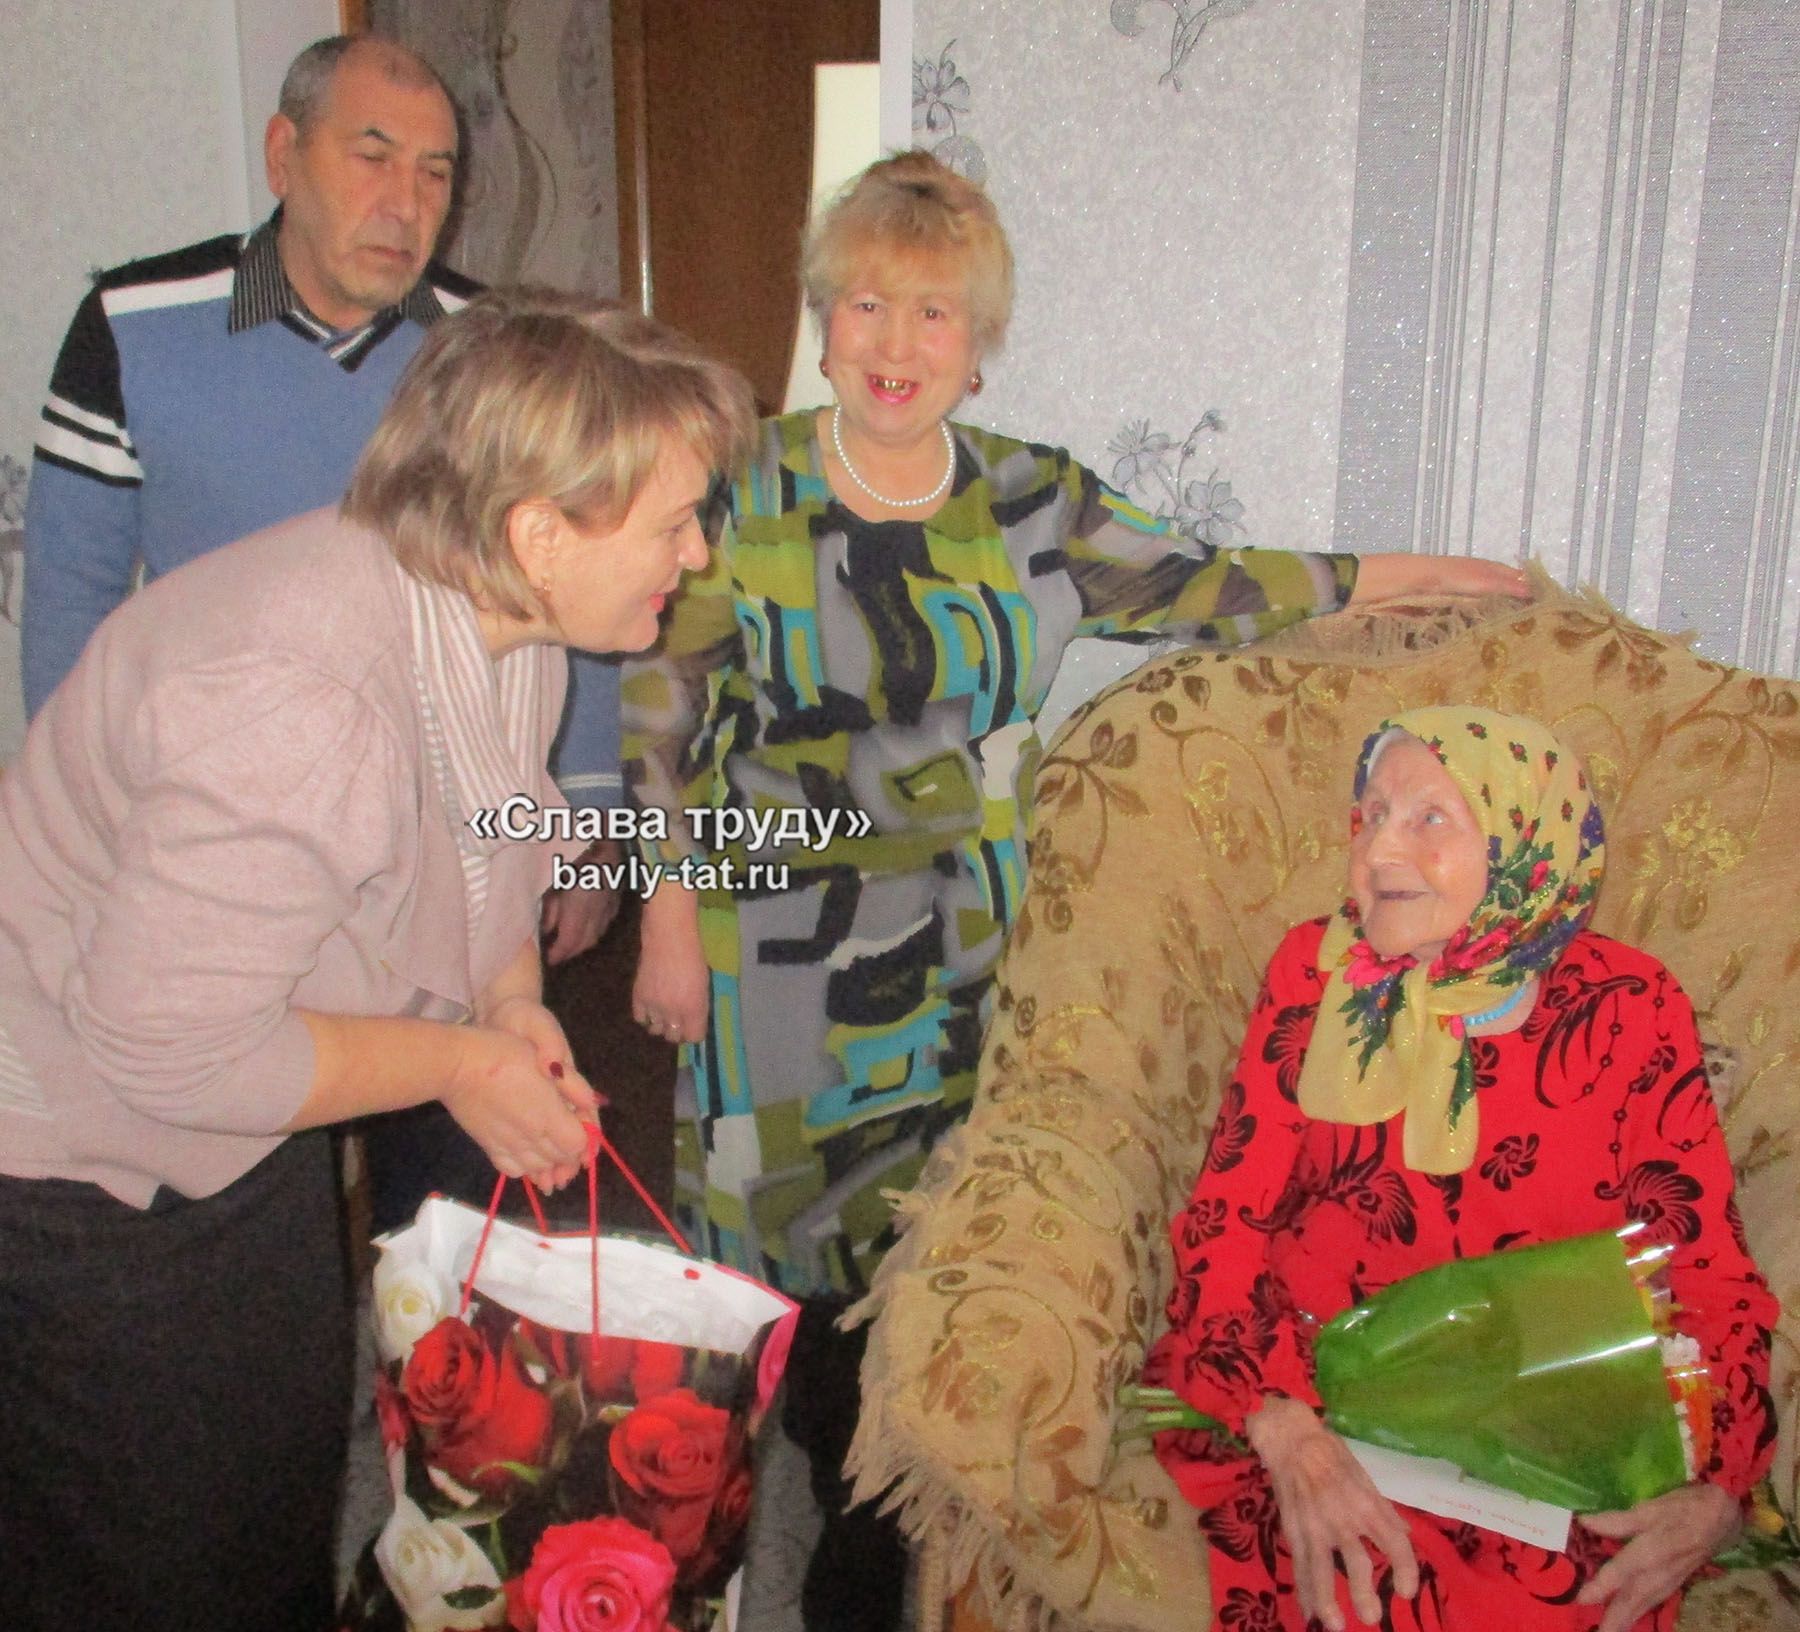 Бавлинская долгожительница встречает юбилей в кругу семьи